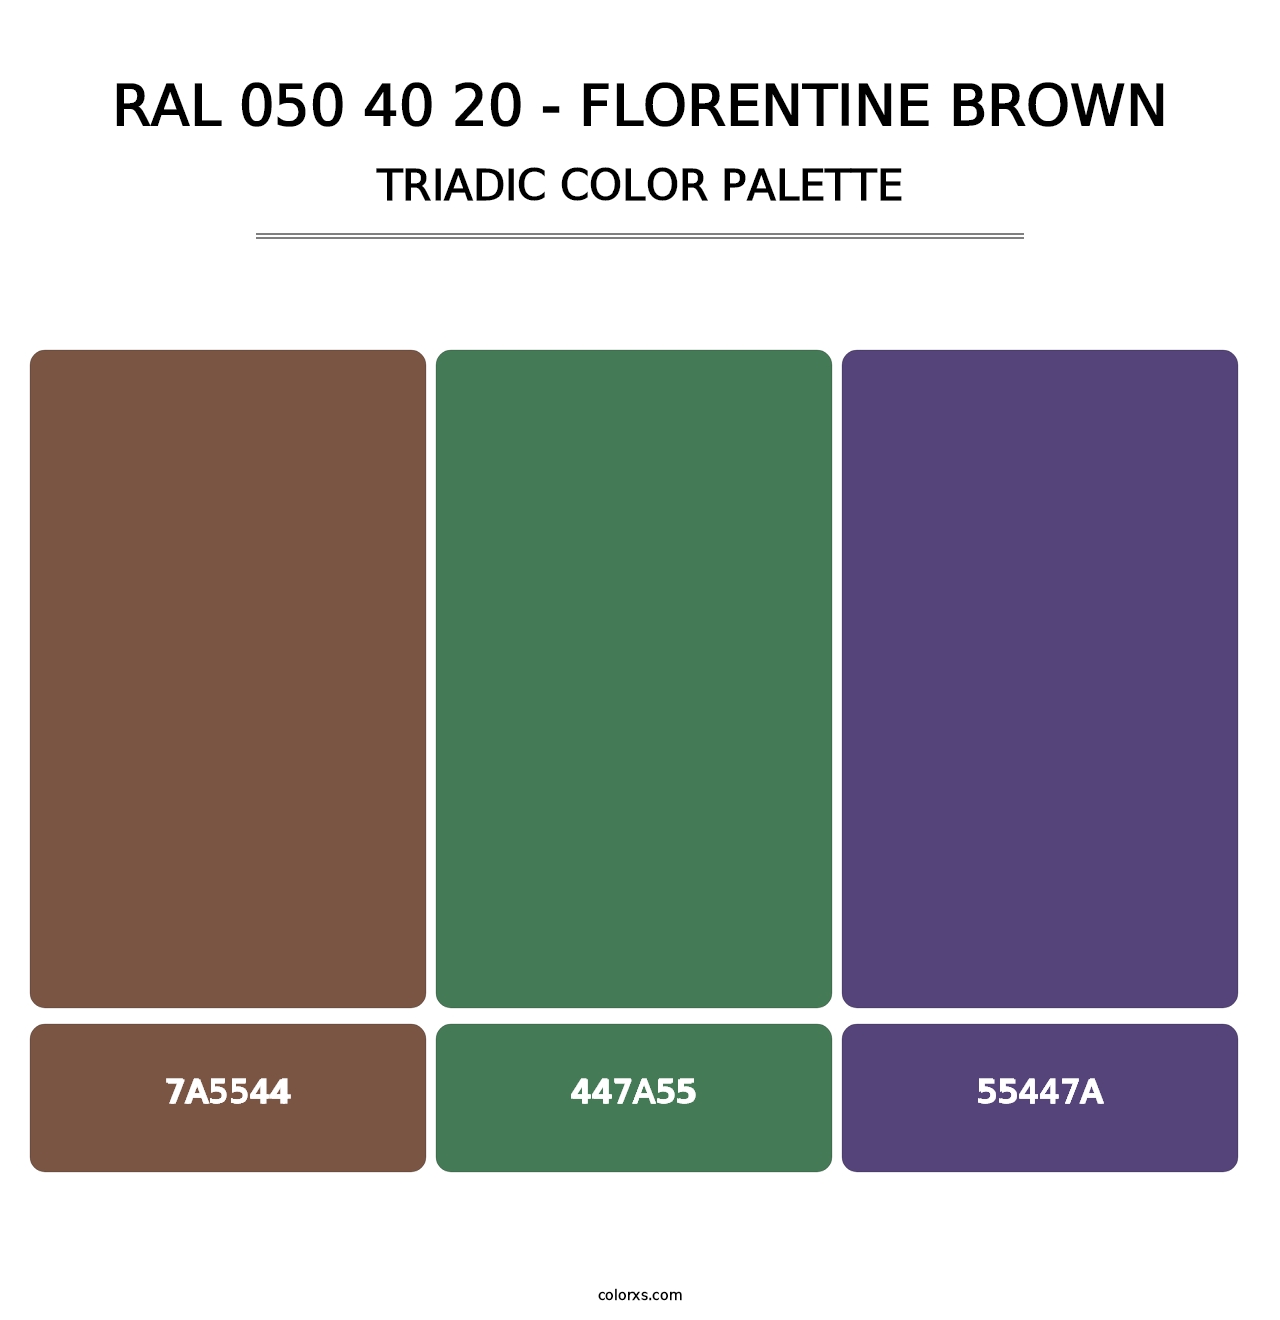 RAL 050 40 20 - Florentine Brown - Triadic Color Palette